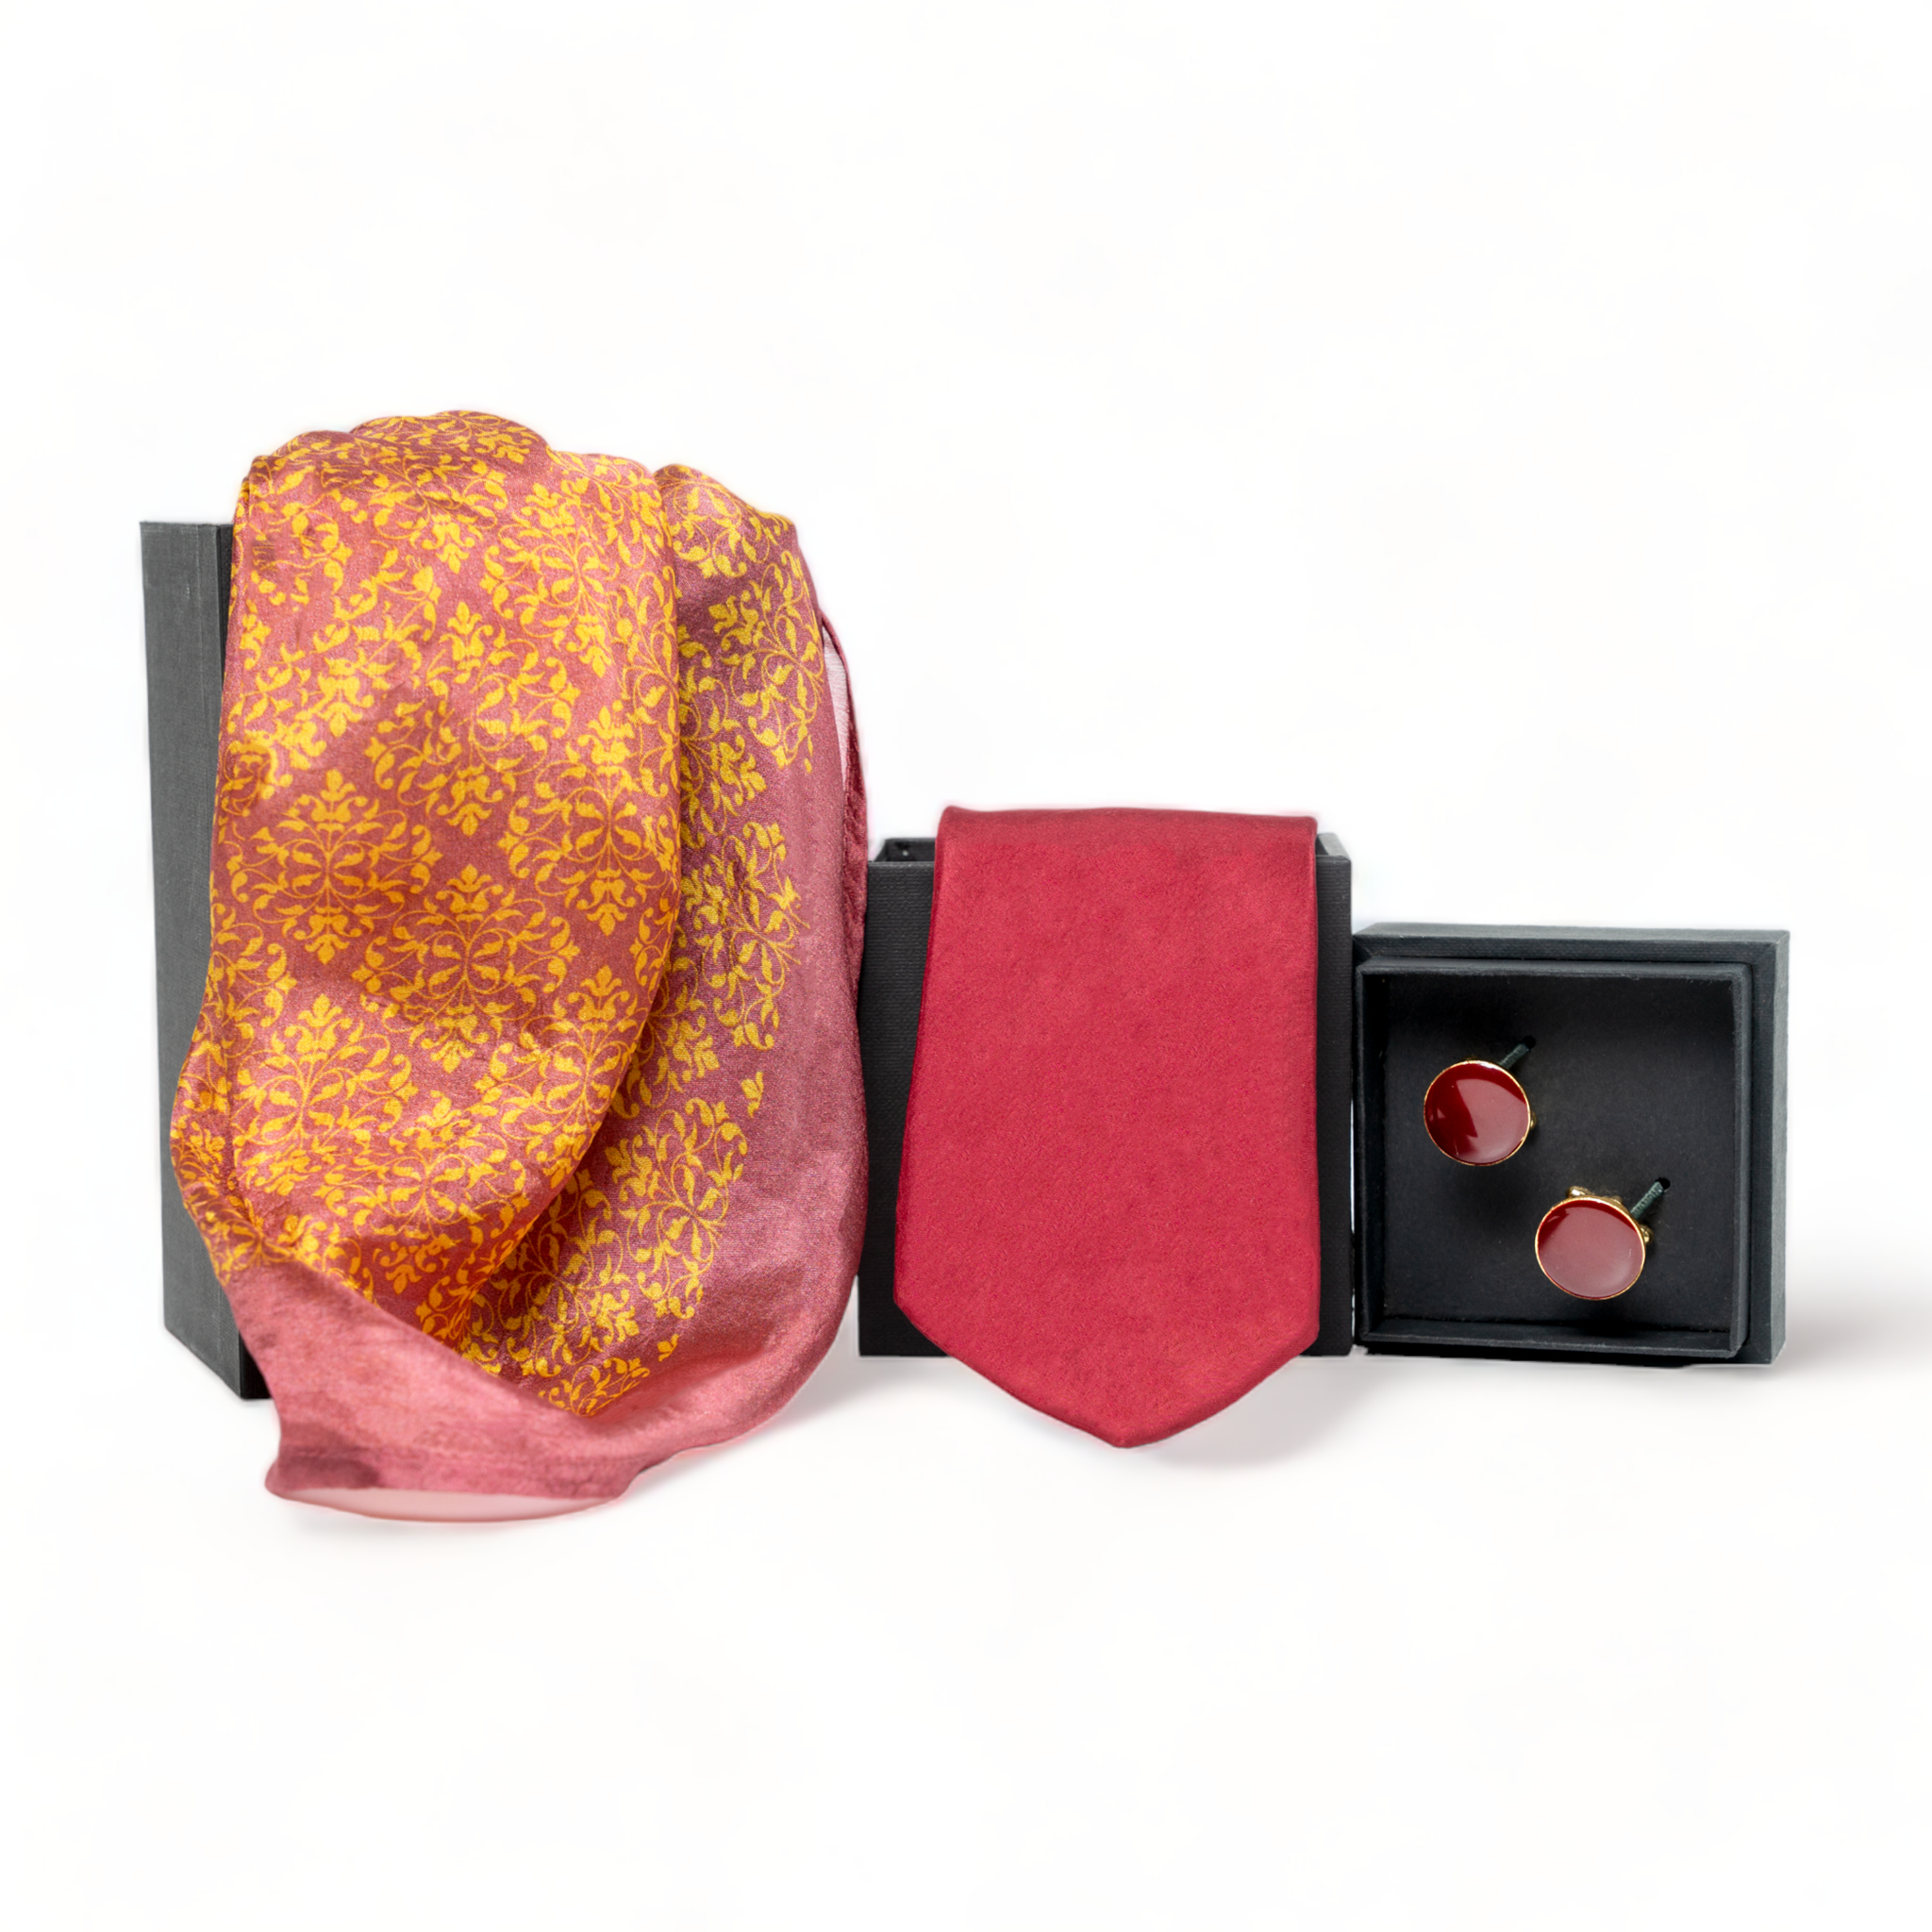 Chokore Special 3-in-1 Gift Set for Him & Her (Women’s Silk Stole, Necktie, & Cufflinks)